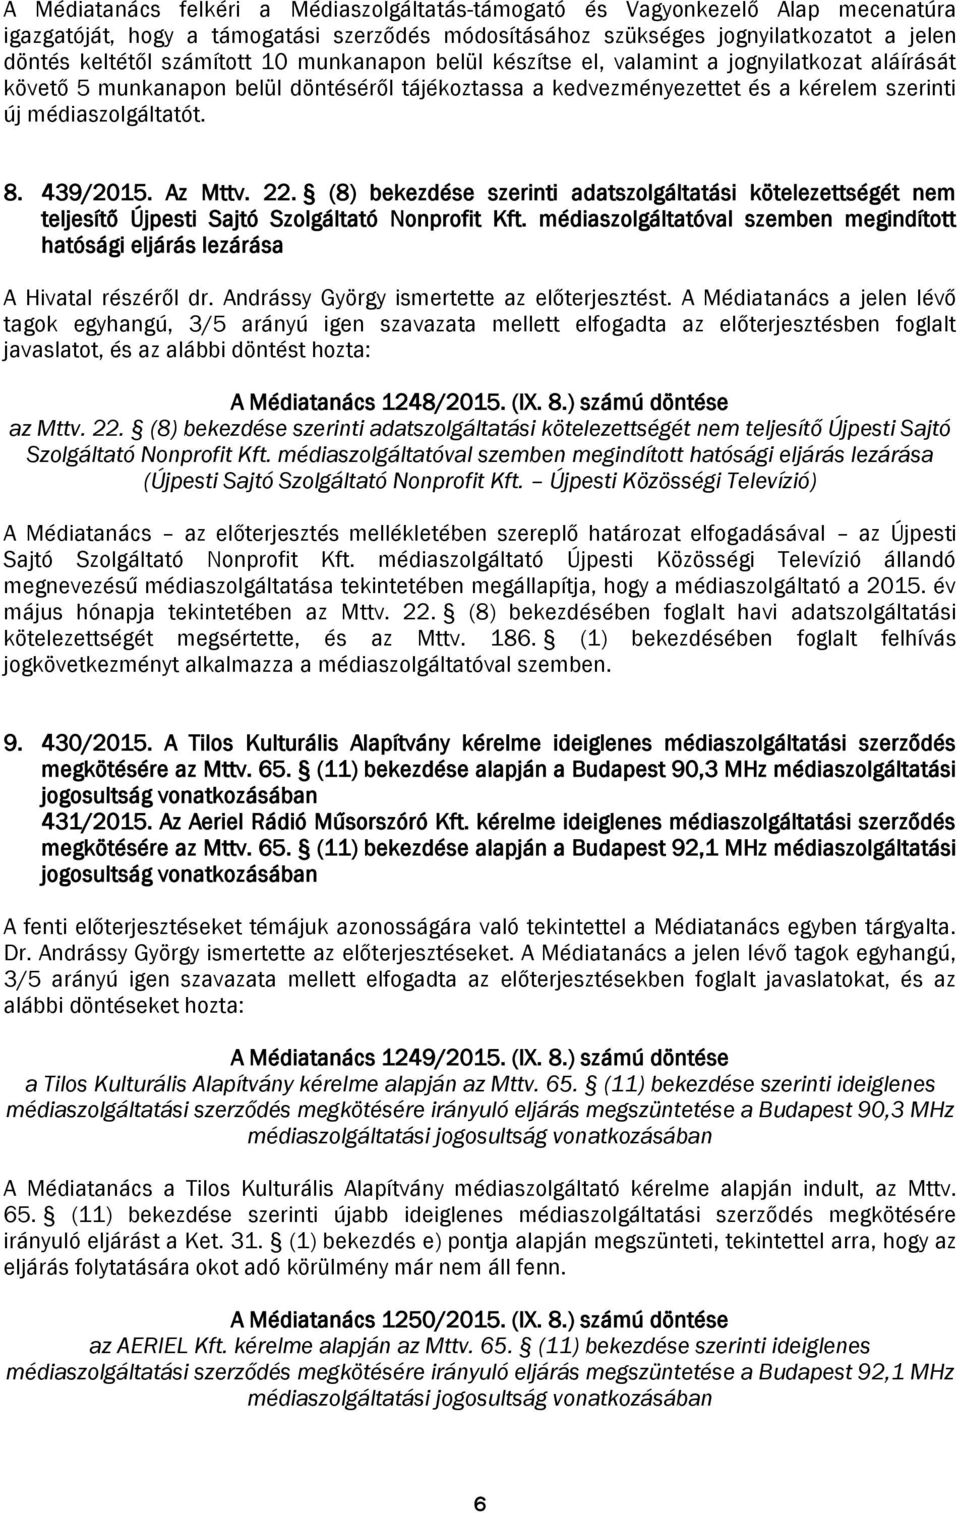 Az Mttv. 22. (8) bekezdése szerinti adatszolgáltatási kötelezettségét nem teljesítő Újpesti Sajtó Szolgáltató Nonprofit Kft.